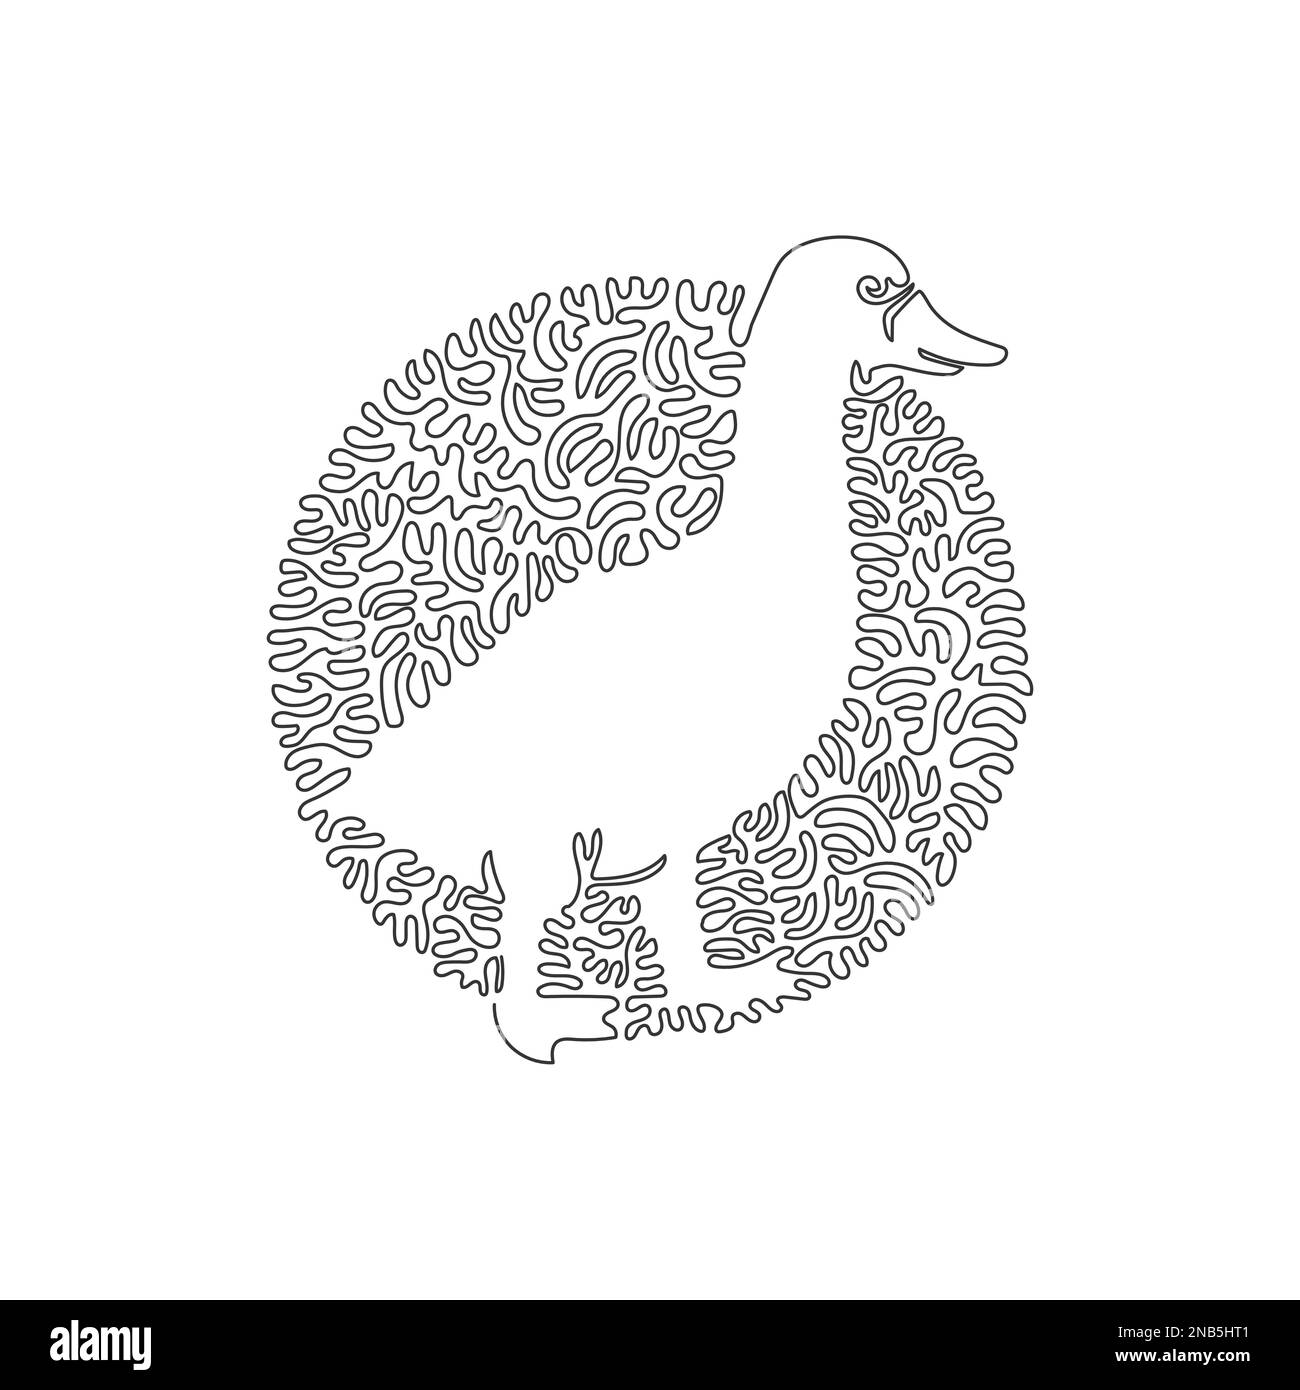 Les canards sont des oiseaux aquatiques. Ligne continue dessin graphique dessin vectoriel illustration de canard adorable pour icône, symbole Illustration de Vecteur